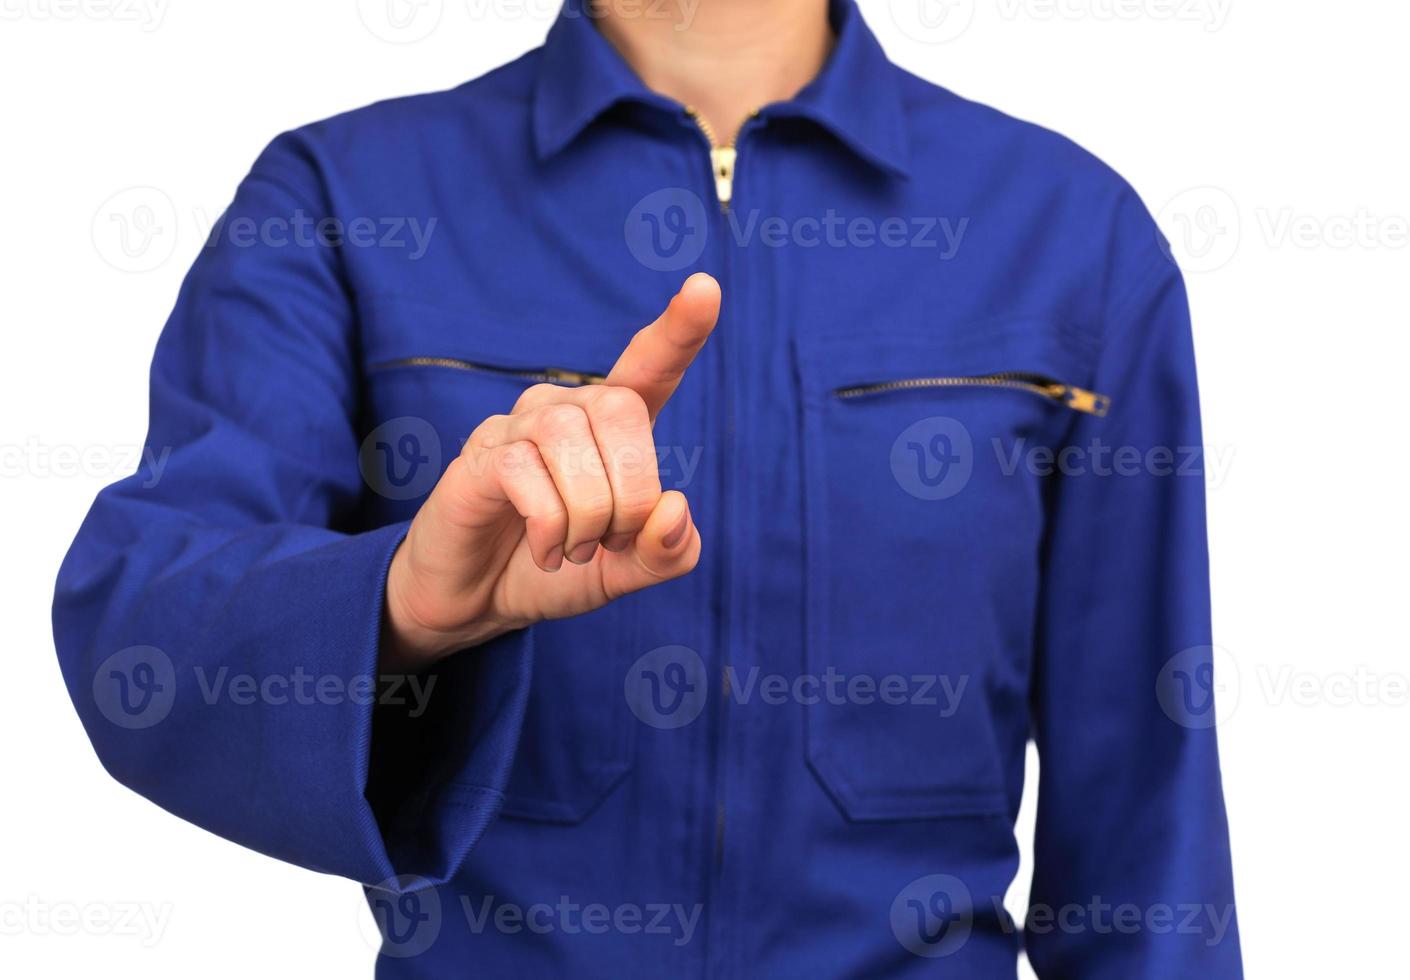 femme en uniforme pointant quelque chose avec son doigt photo